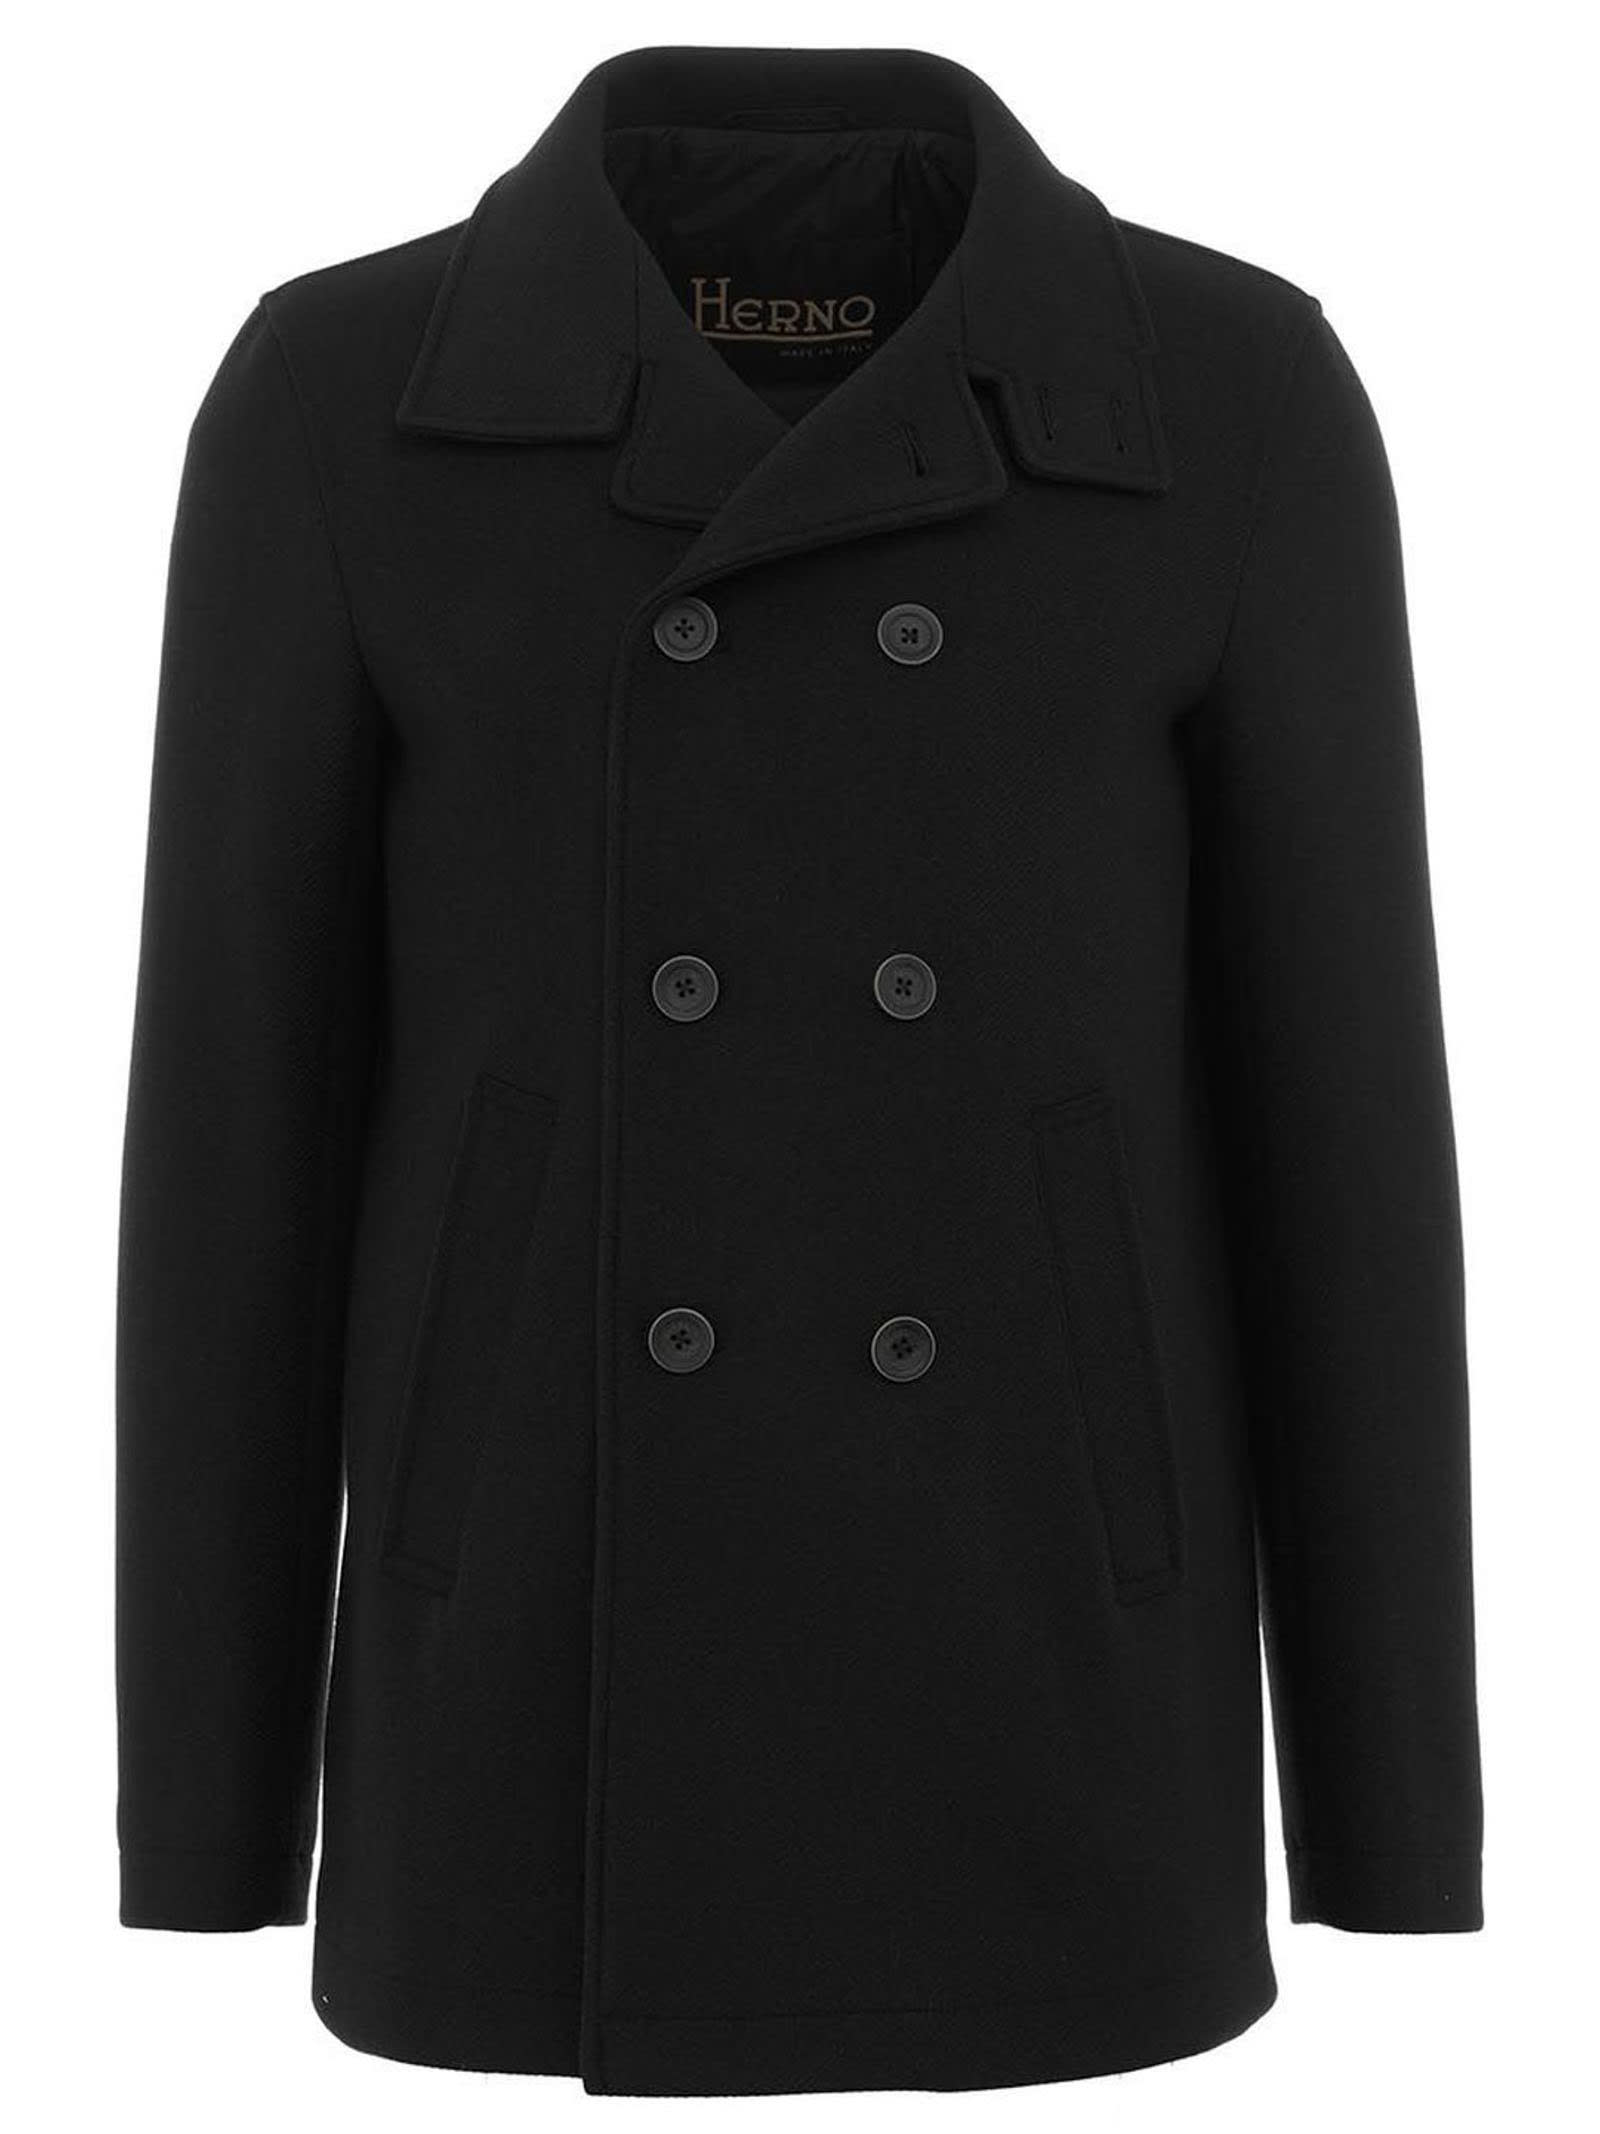 Herno Black Wool Coat